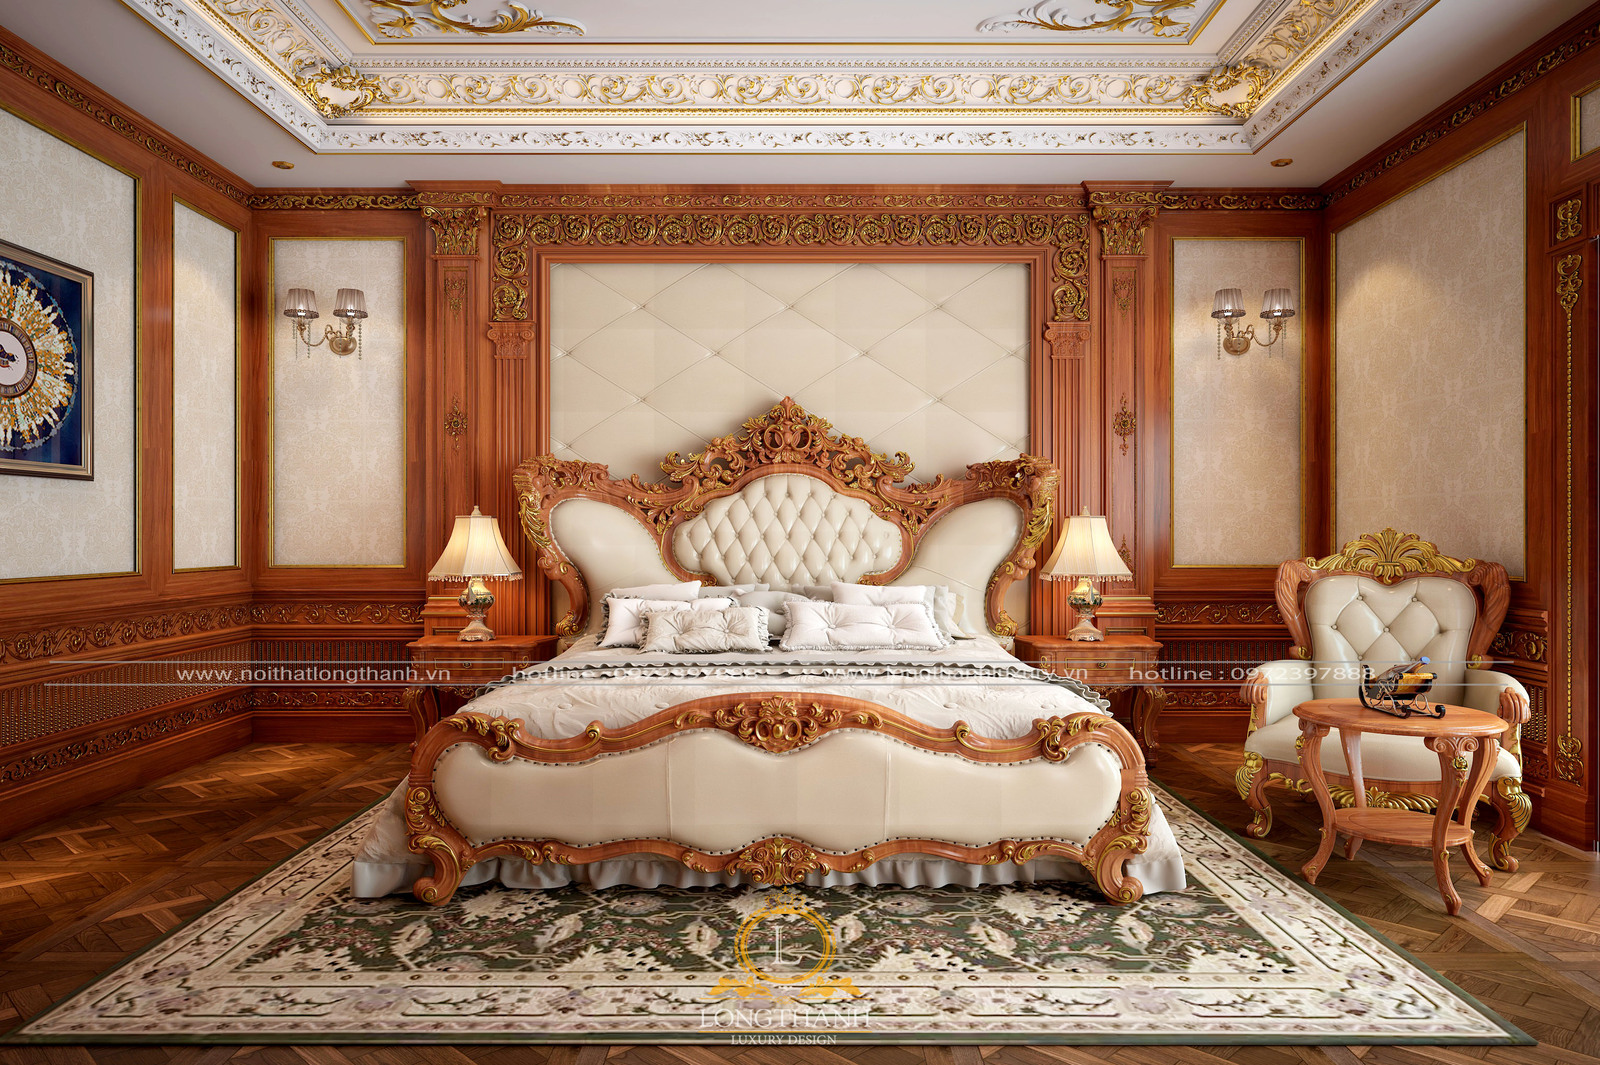 Tổng hợp các mẫu giường gỗ tân cổ điển đẹp nhất 2023